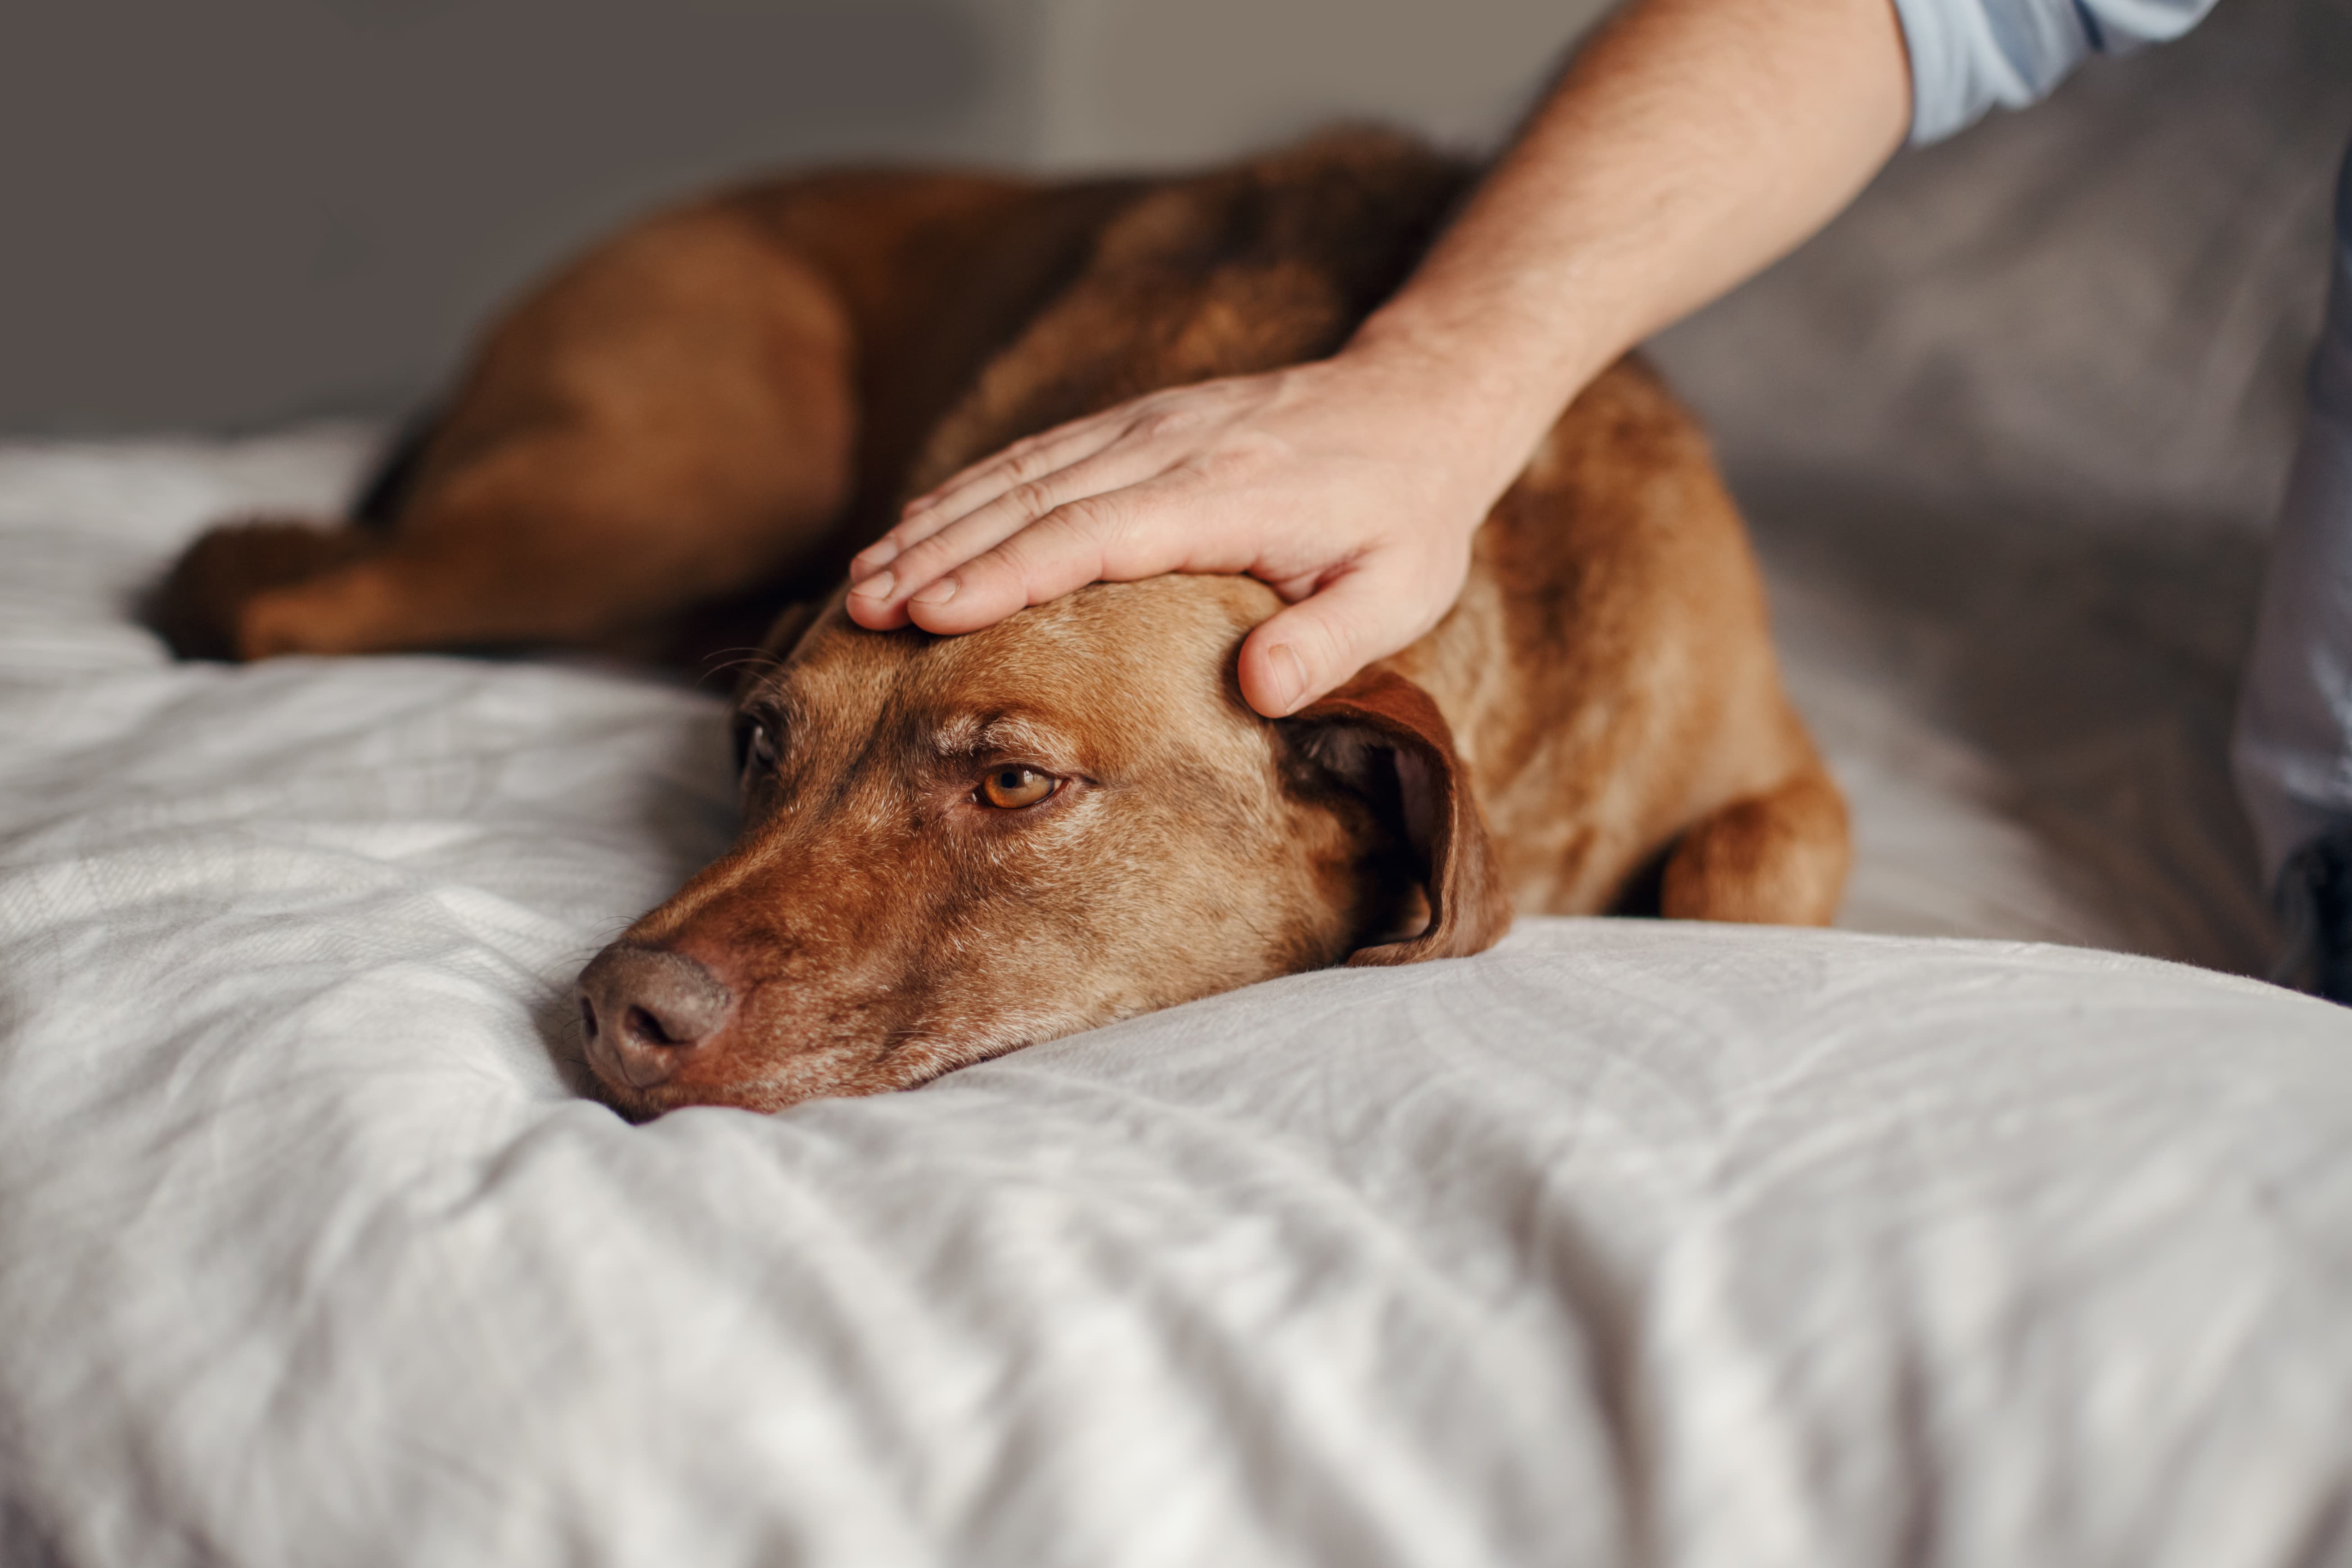 Imagem de um cachorro marrom deitado sobre uma cama, com a cabeça abaixada e seu tutor com uma mão sobre sua cabeça.